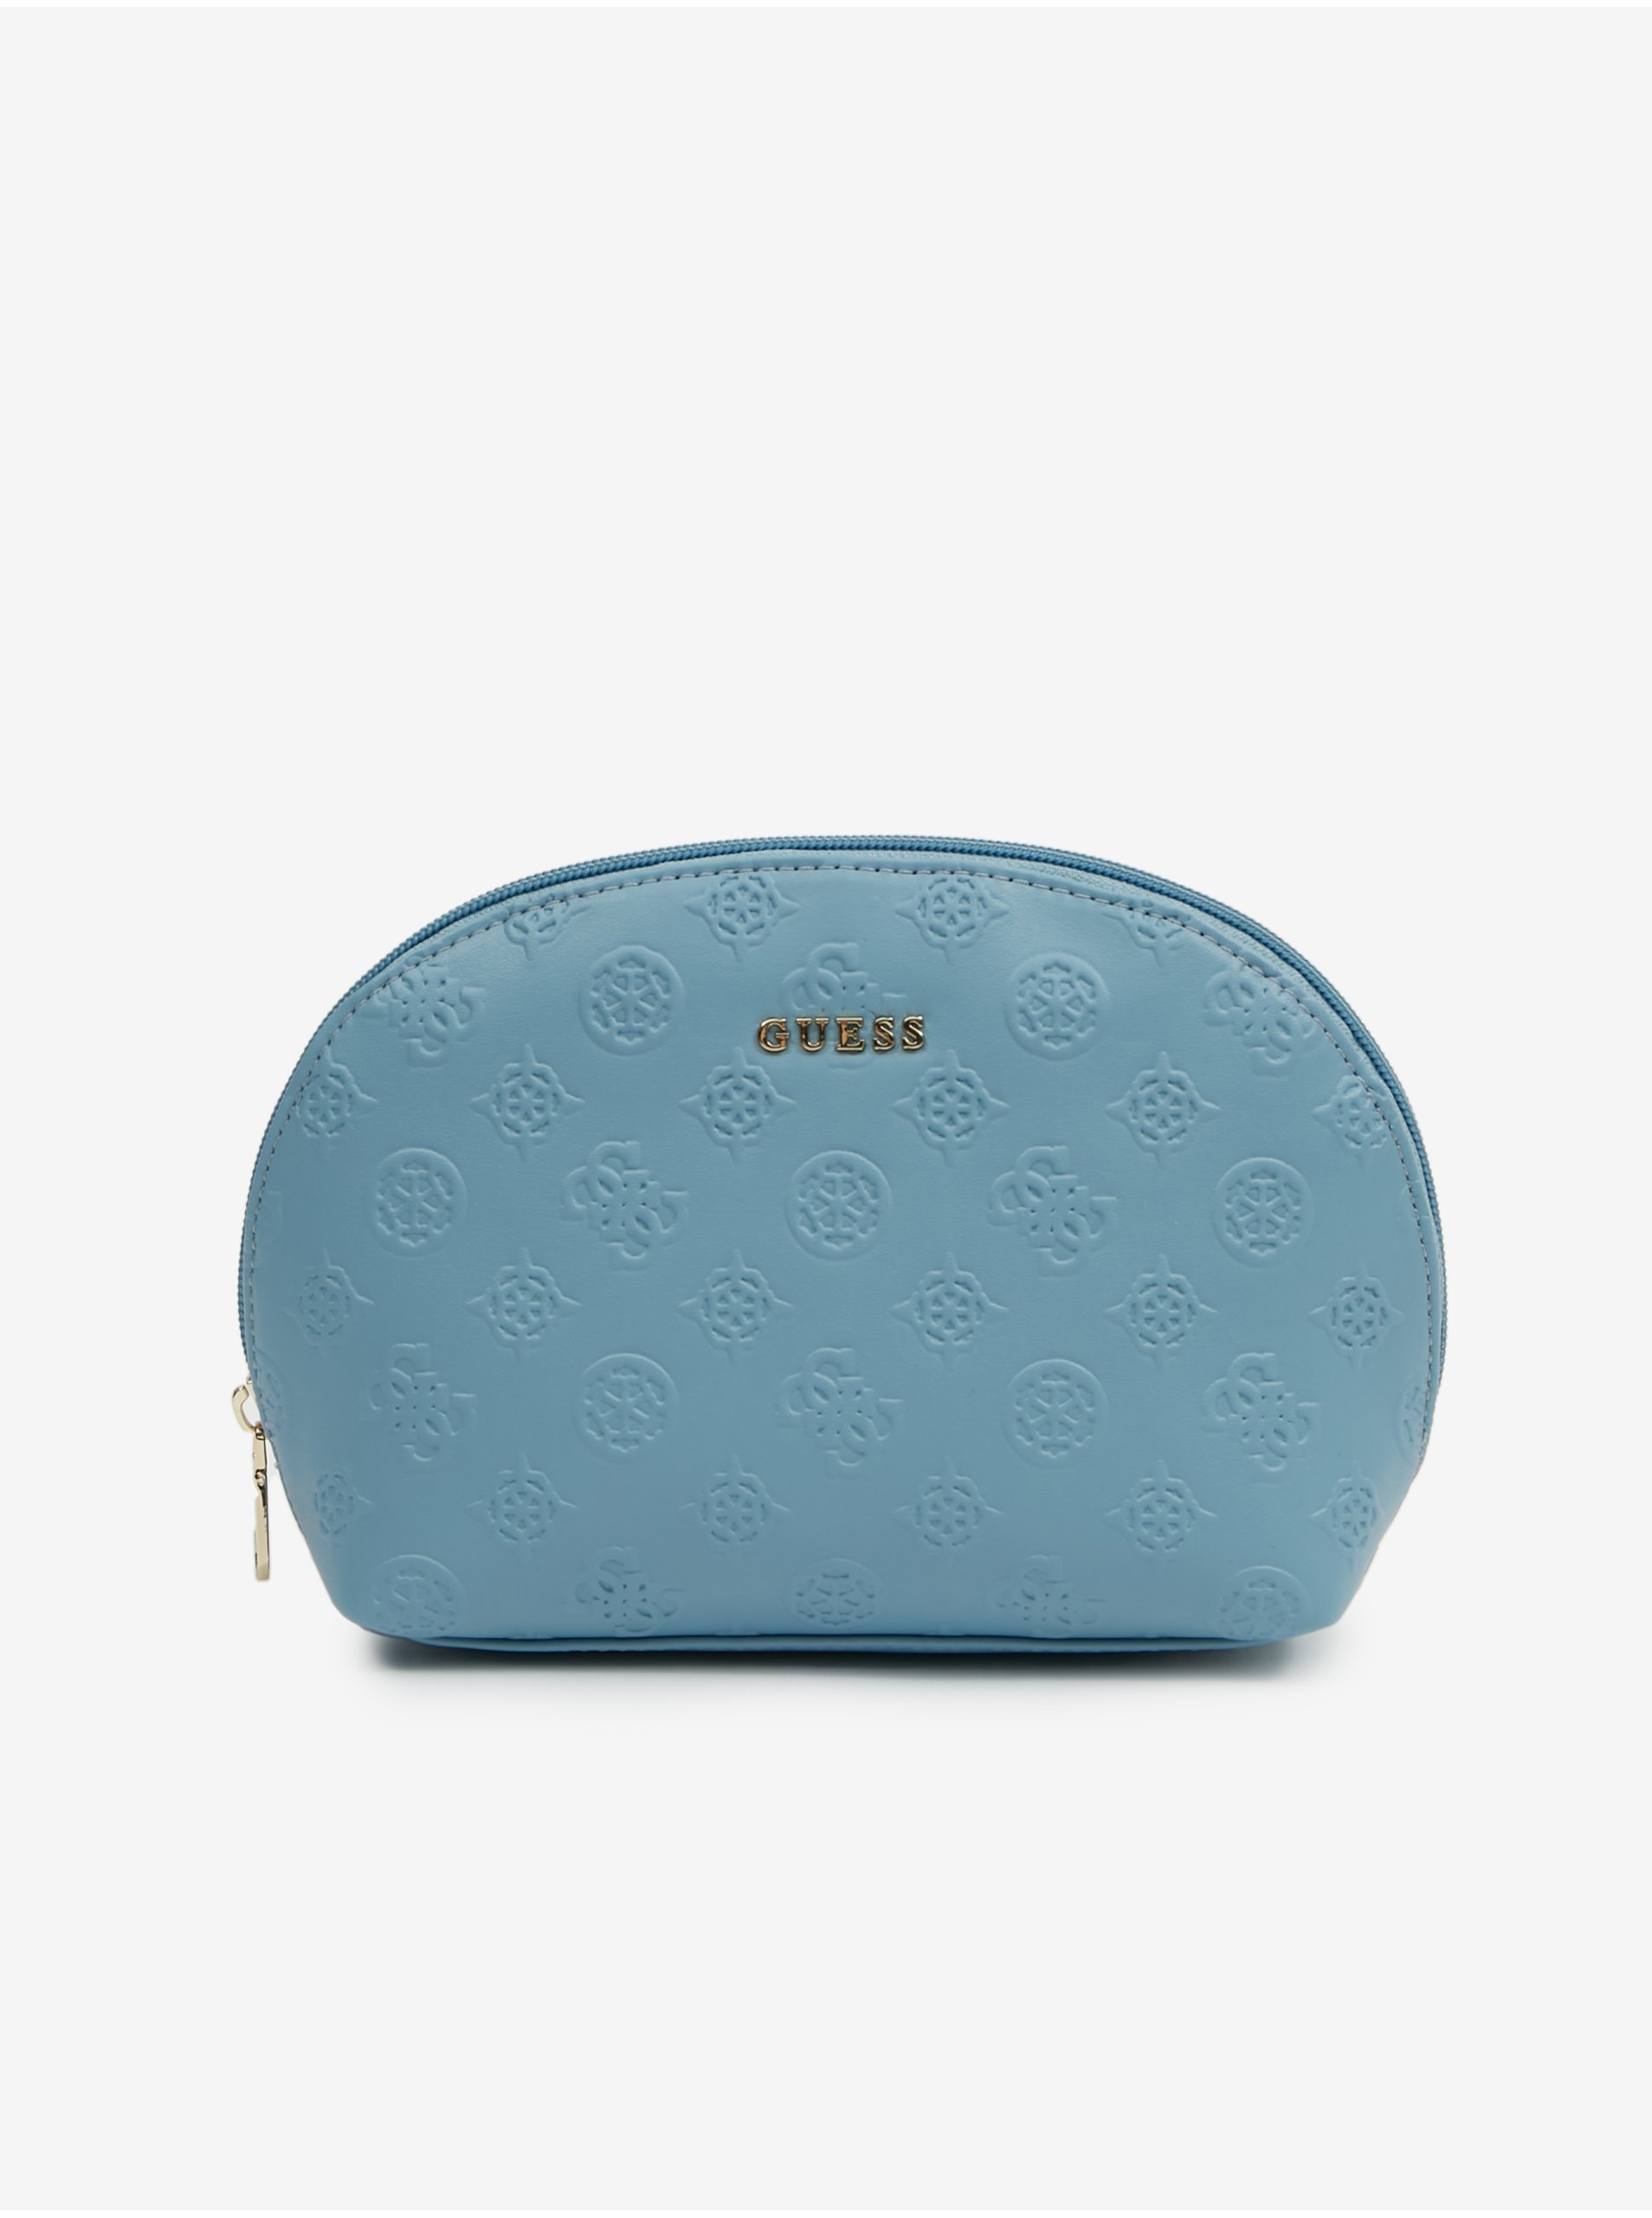 Light blue Guess Dome Women's Cosmetic Bag - Women